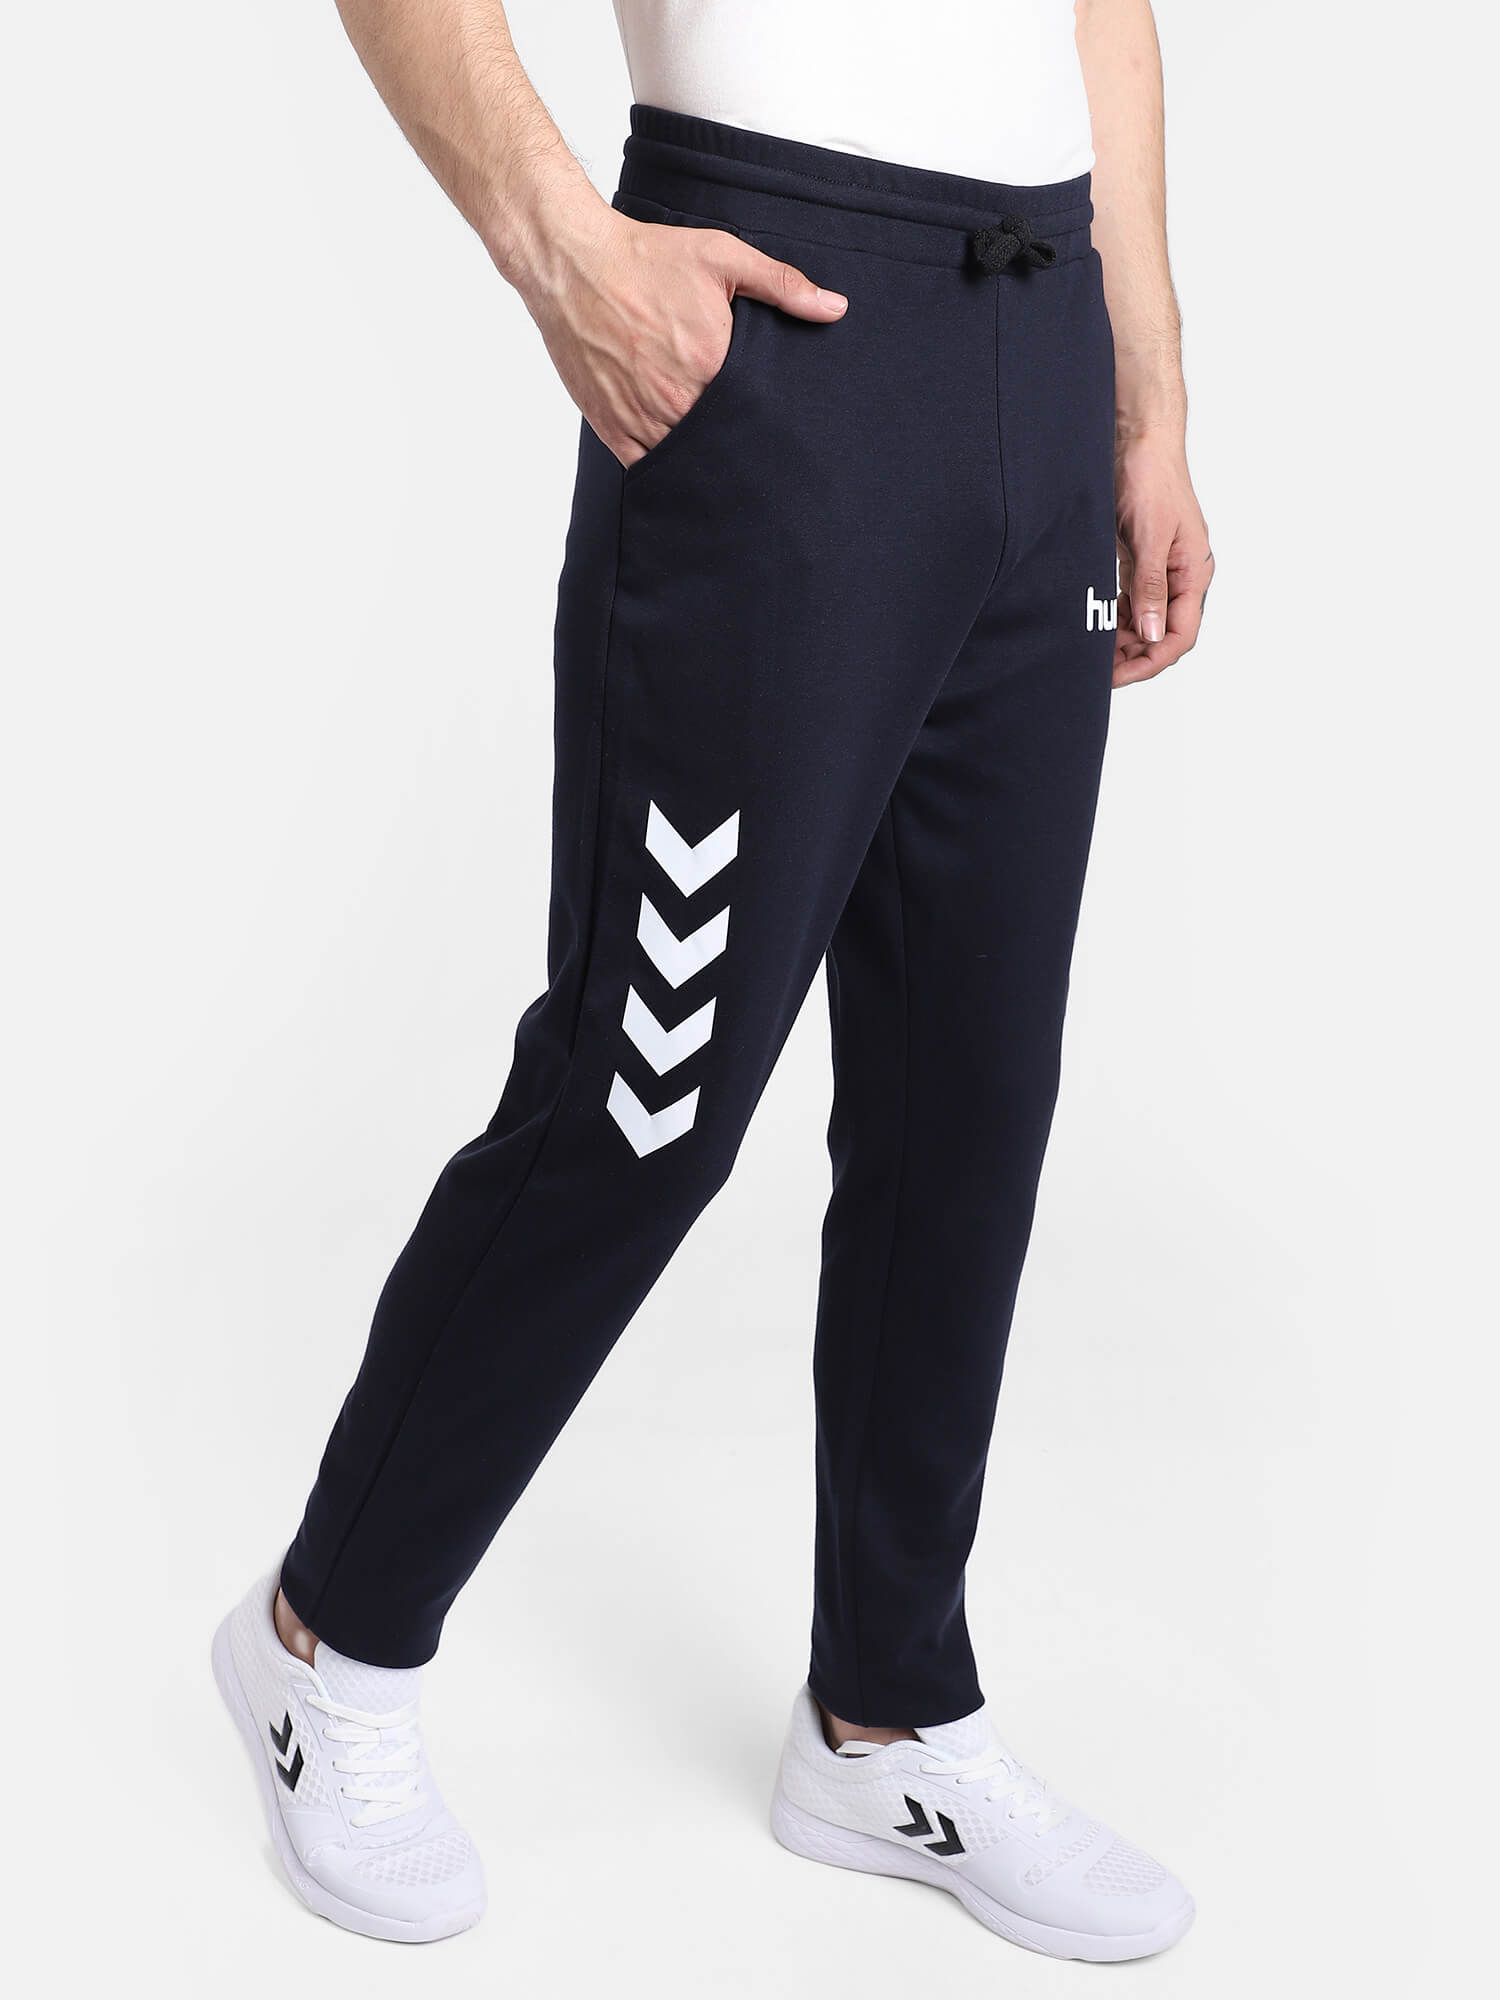 Women's jogging suit Hummel GC Shai - Pants - Categories - Lifestyle